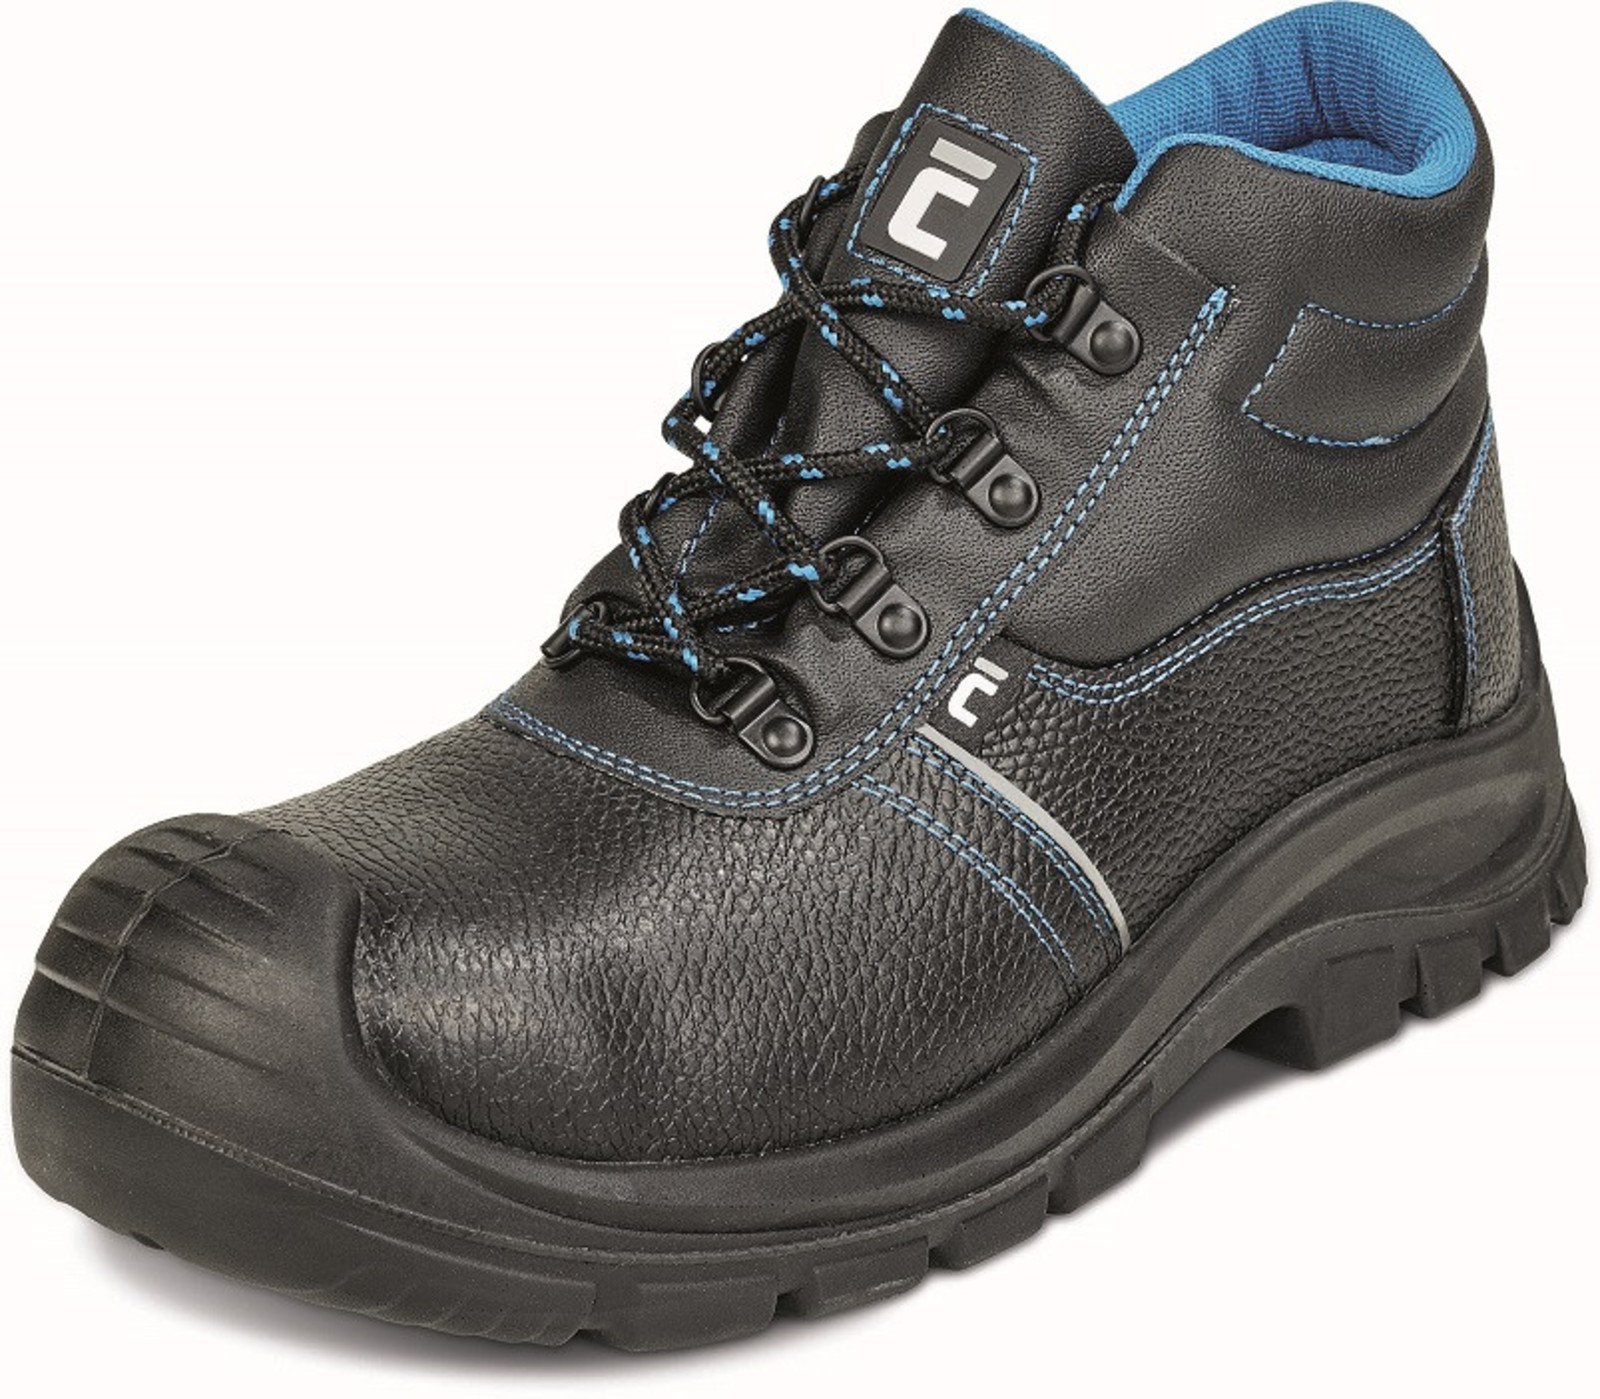 Bezpečnostná obuv Raven XT S1 - veľkosť: 39, farba: čierna